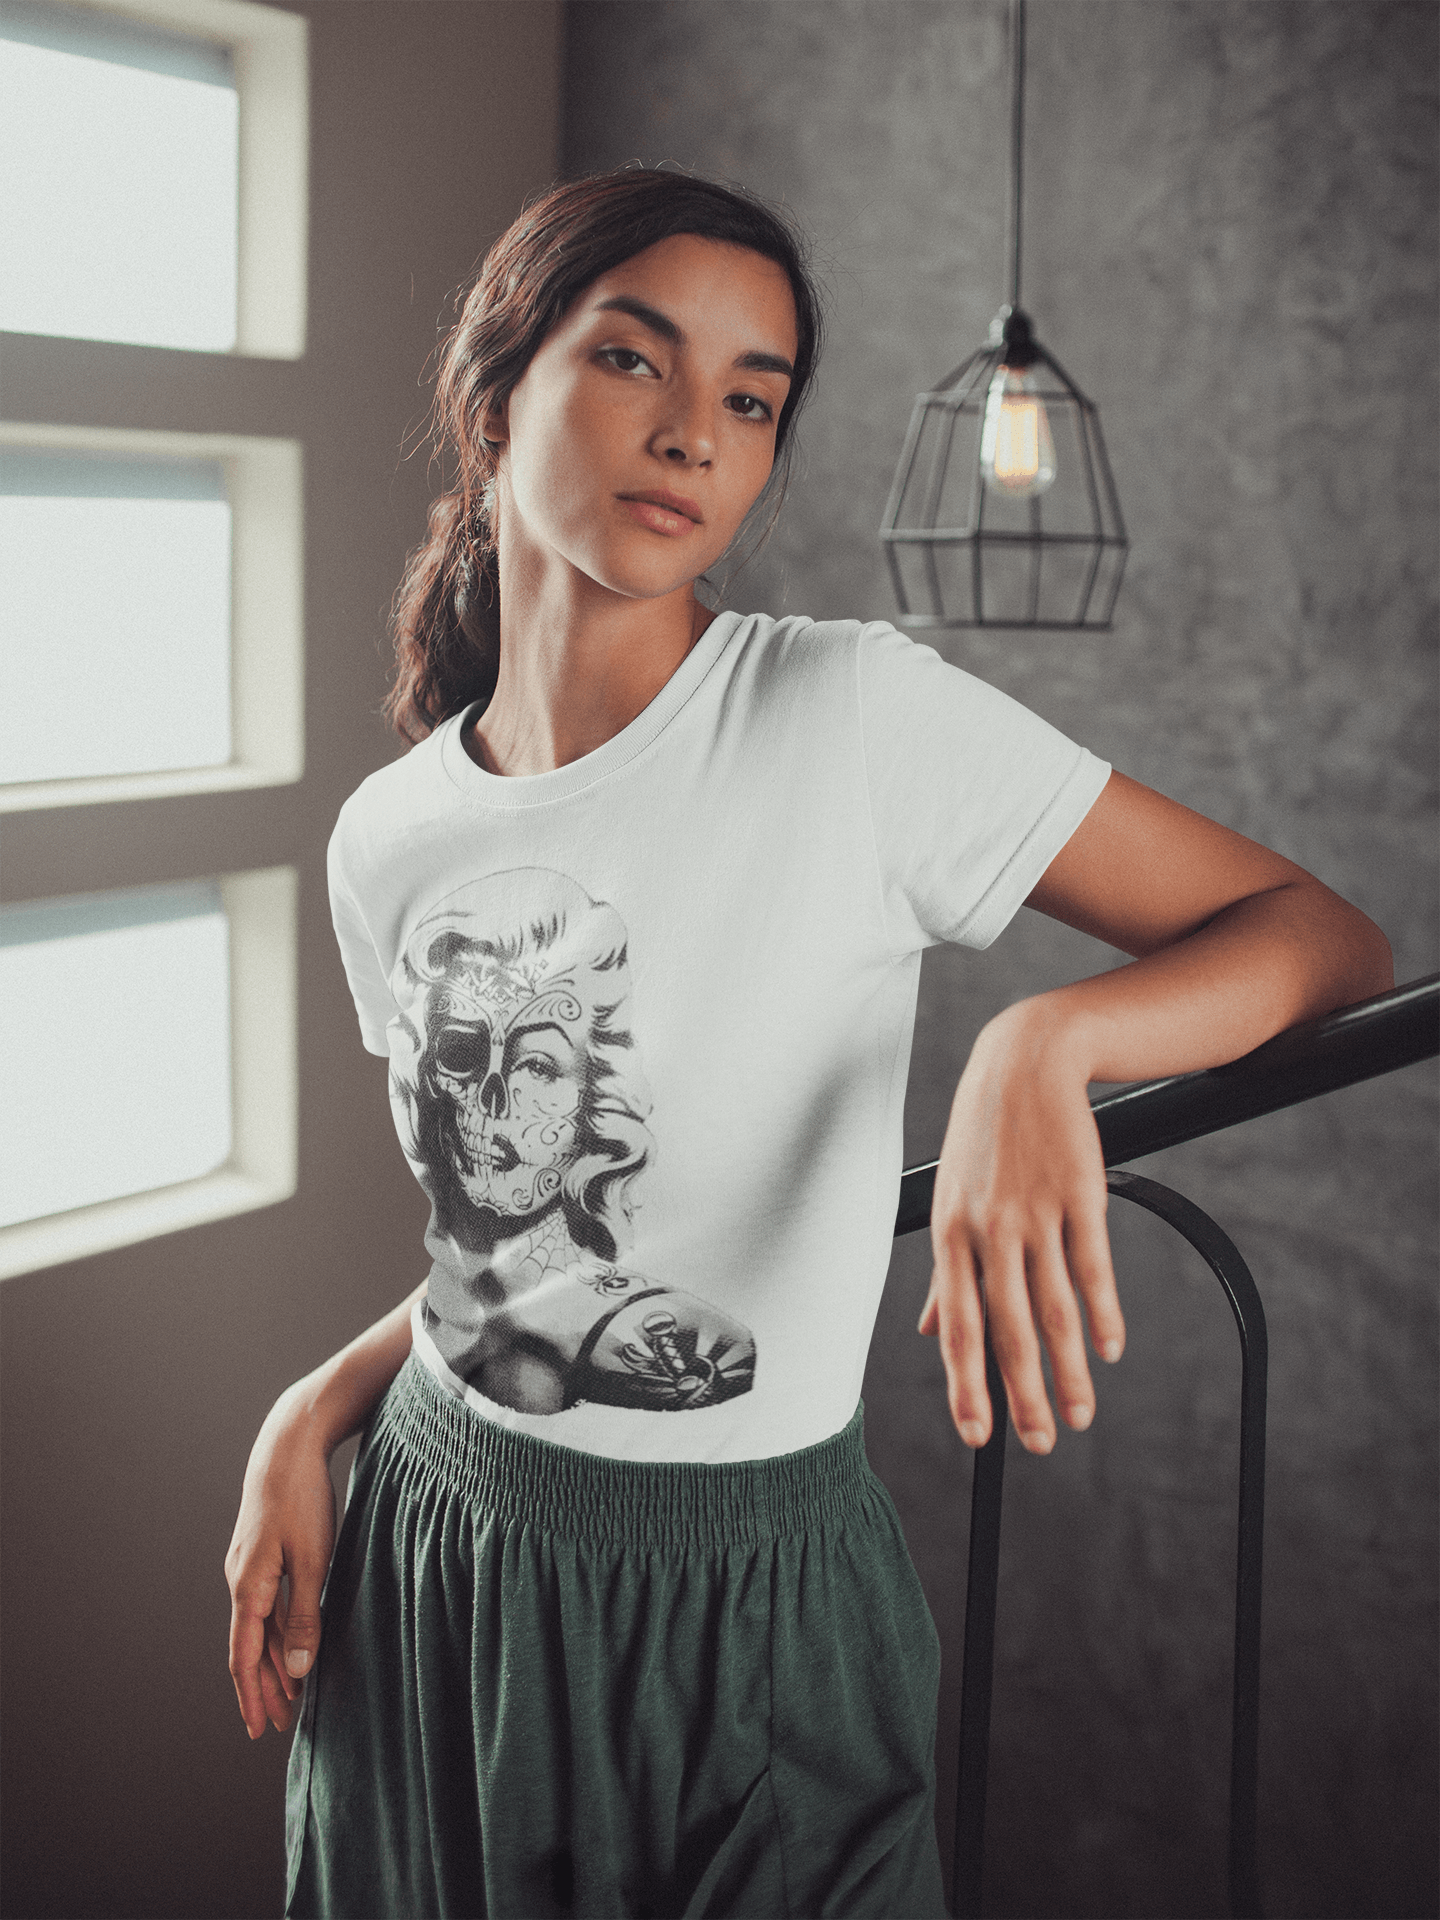 Cotton T-shirt Iconic 50's Pinup Girl With Half Skull Tattoo Unisex Tee - TopKoalaTee